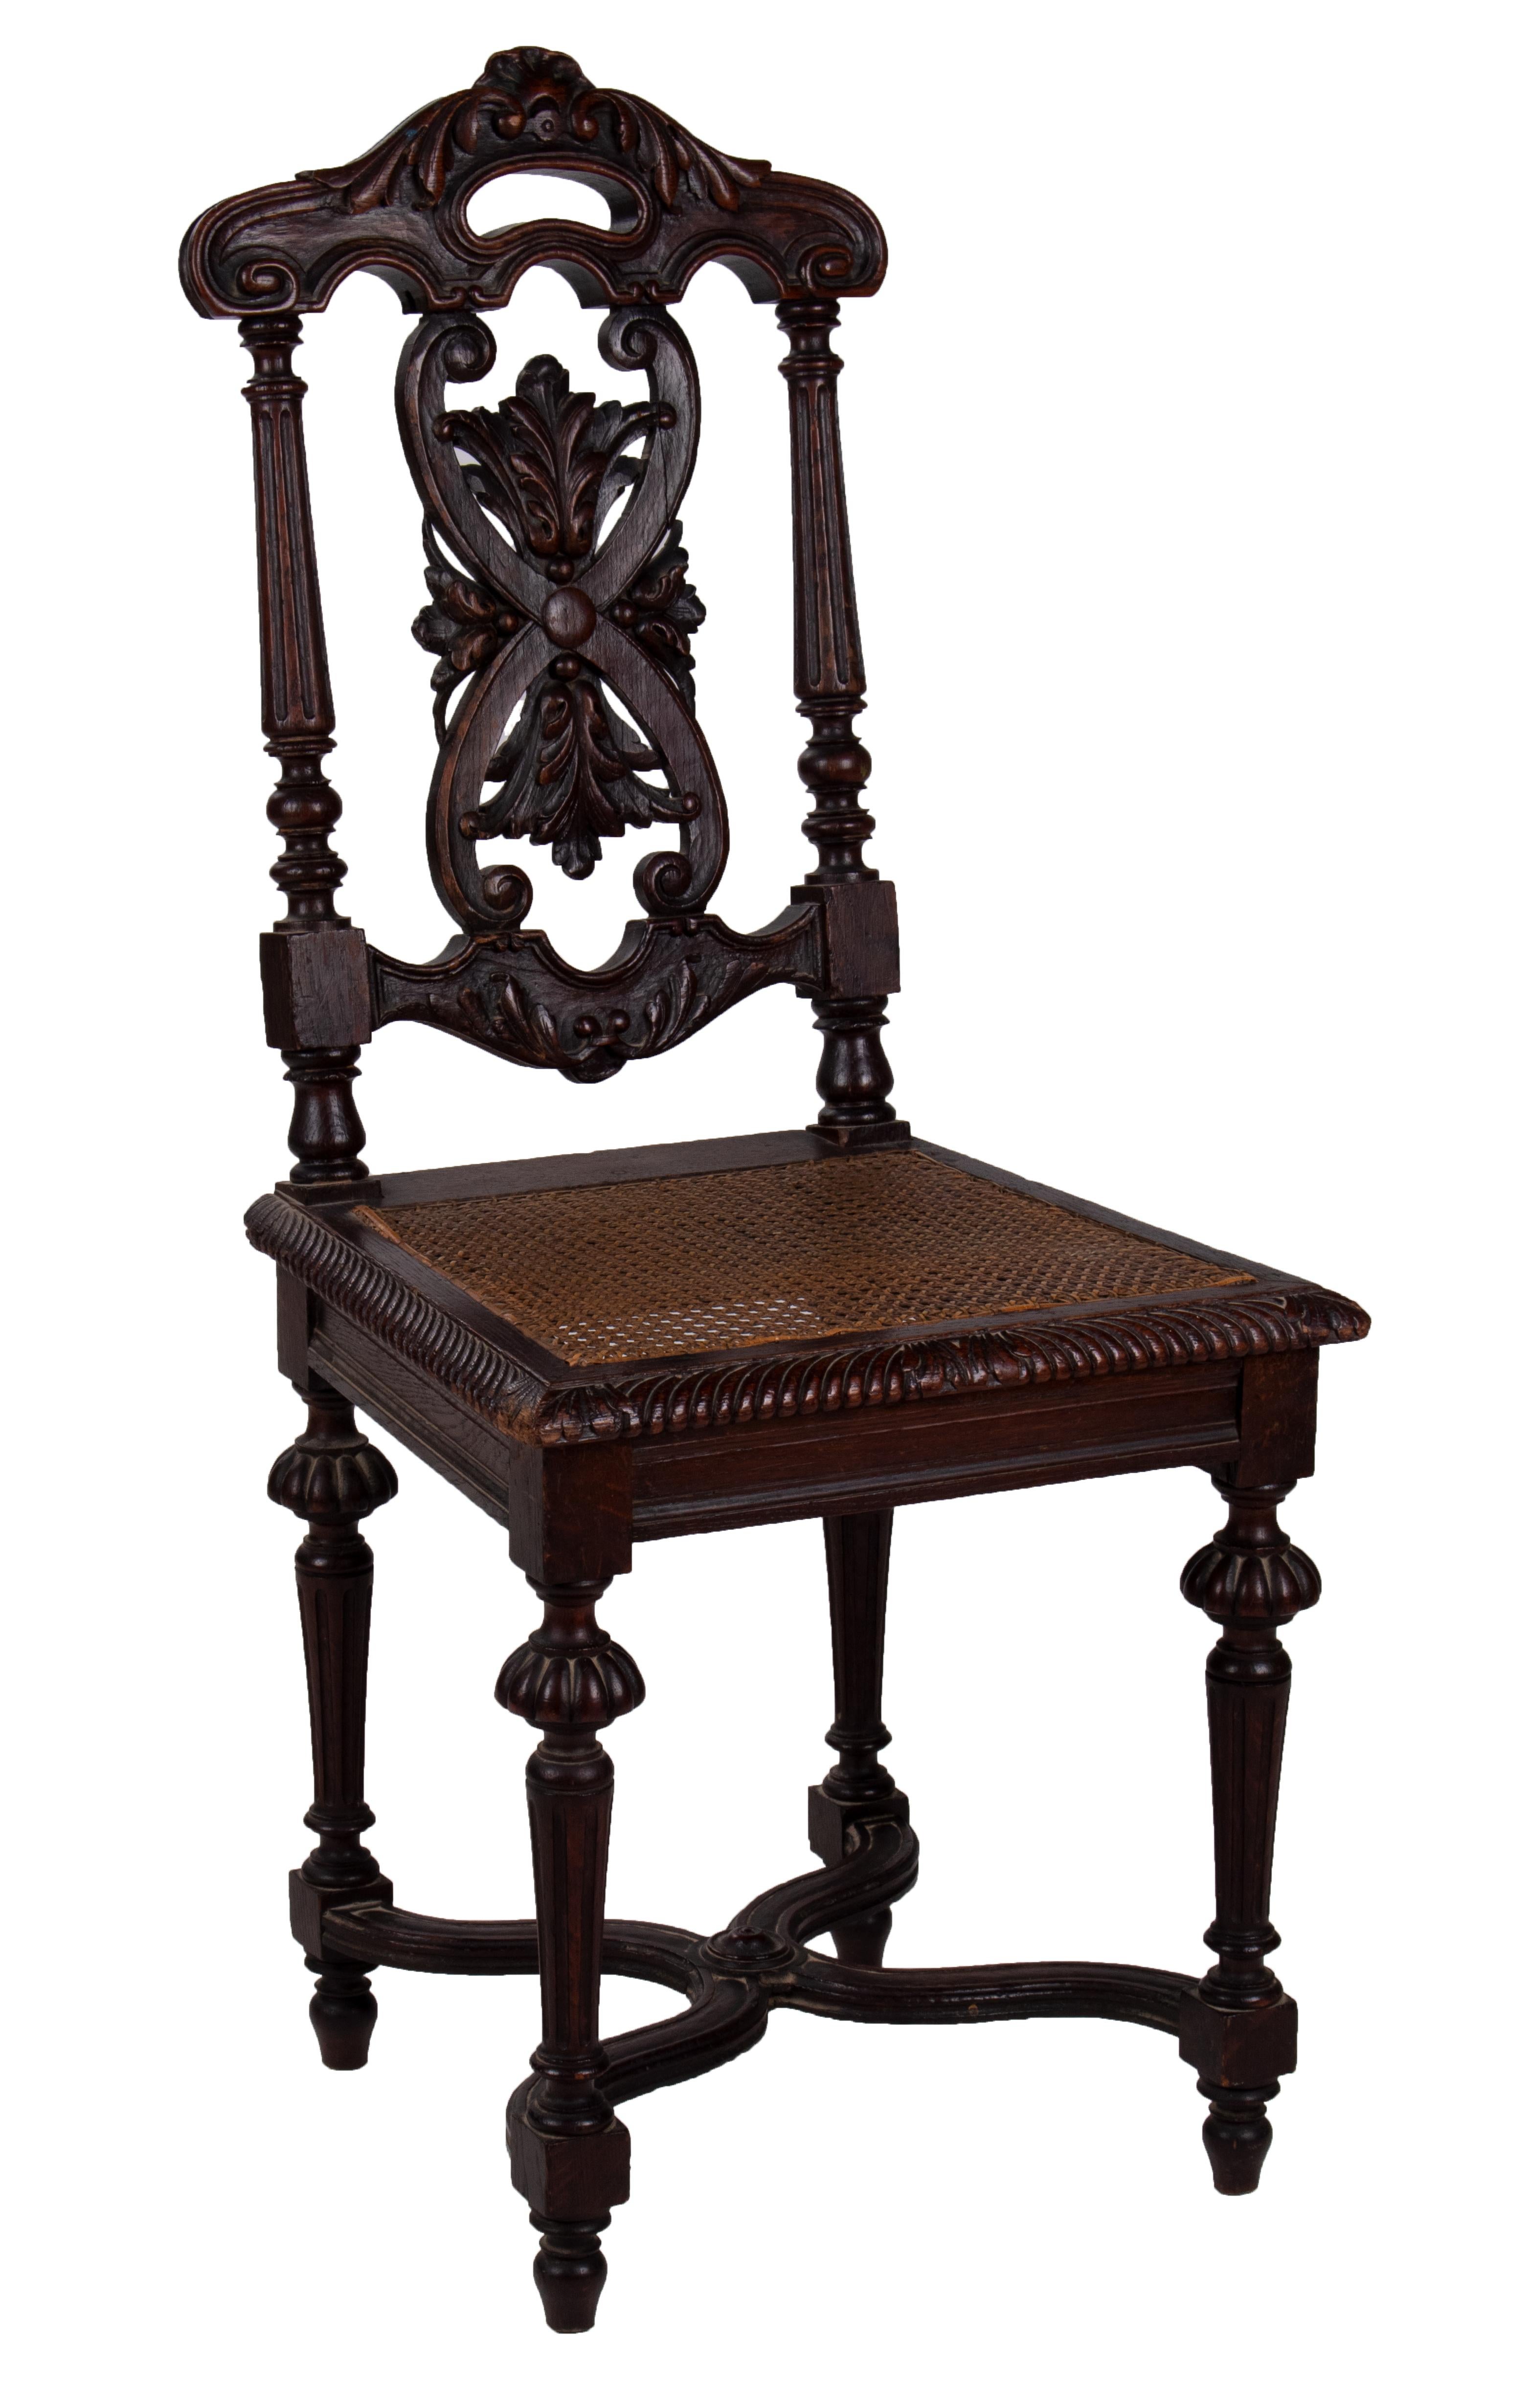 ensemble espagnol du XIXe siècle, sculpté à la main, composé de quatre chaises et de deux fauteuils, avec des sièges en osier. 

Comme on peut l'apprécier sur la dernière photo, l'un des sièges de la chaise est endommagé.
   
   